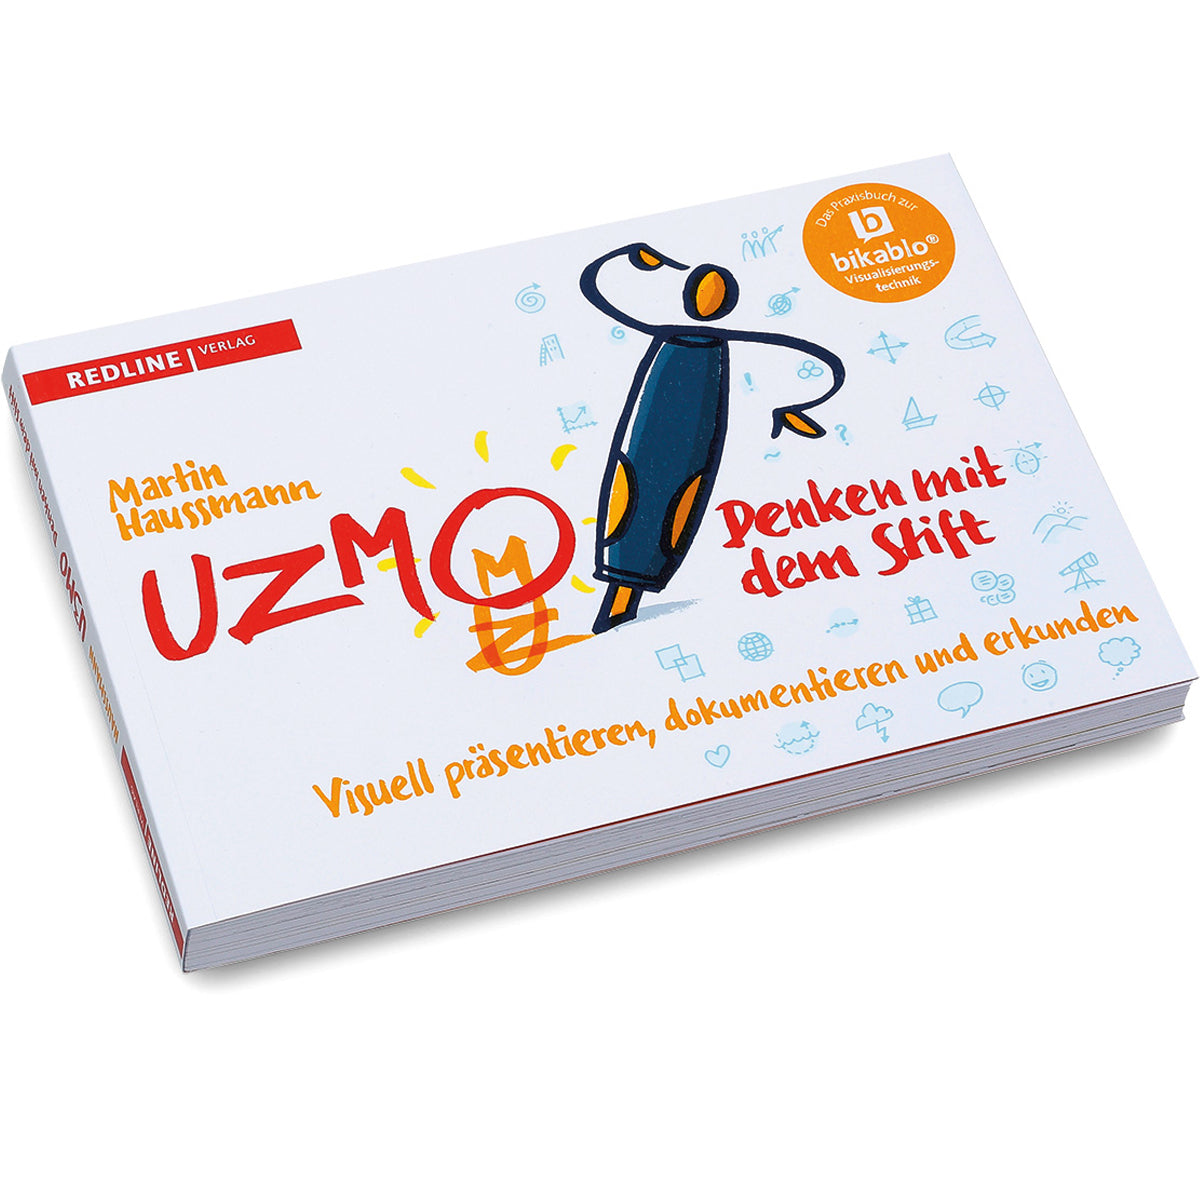 UZMO – Denken mit dem Stift (Duits)